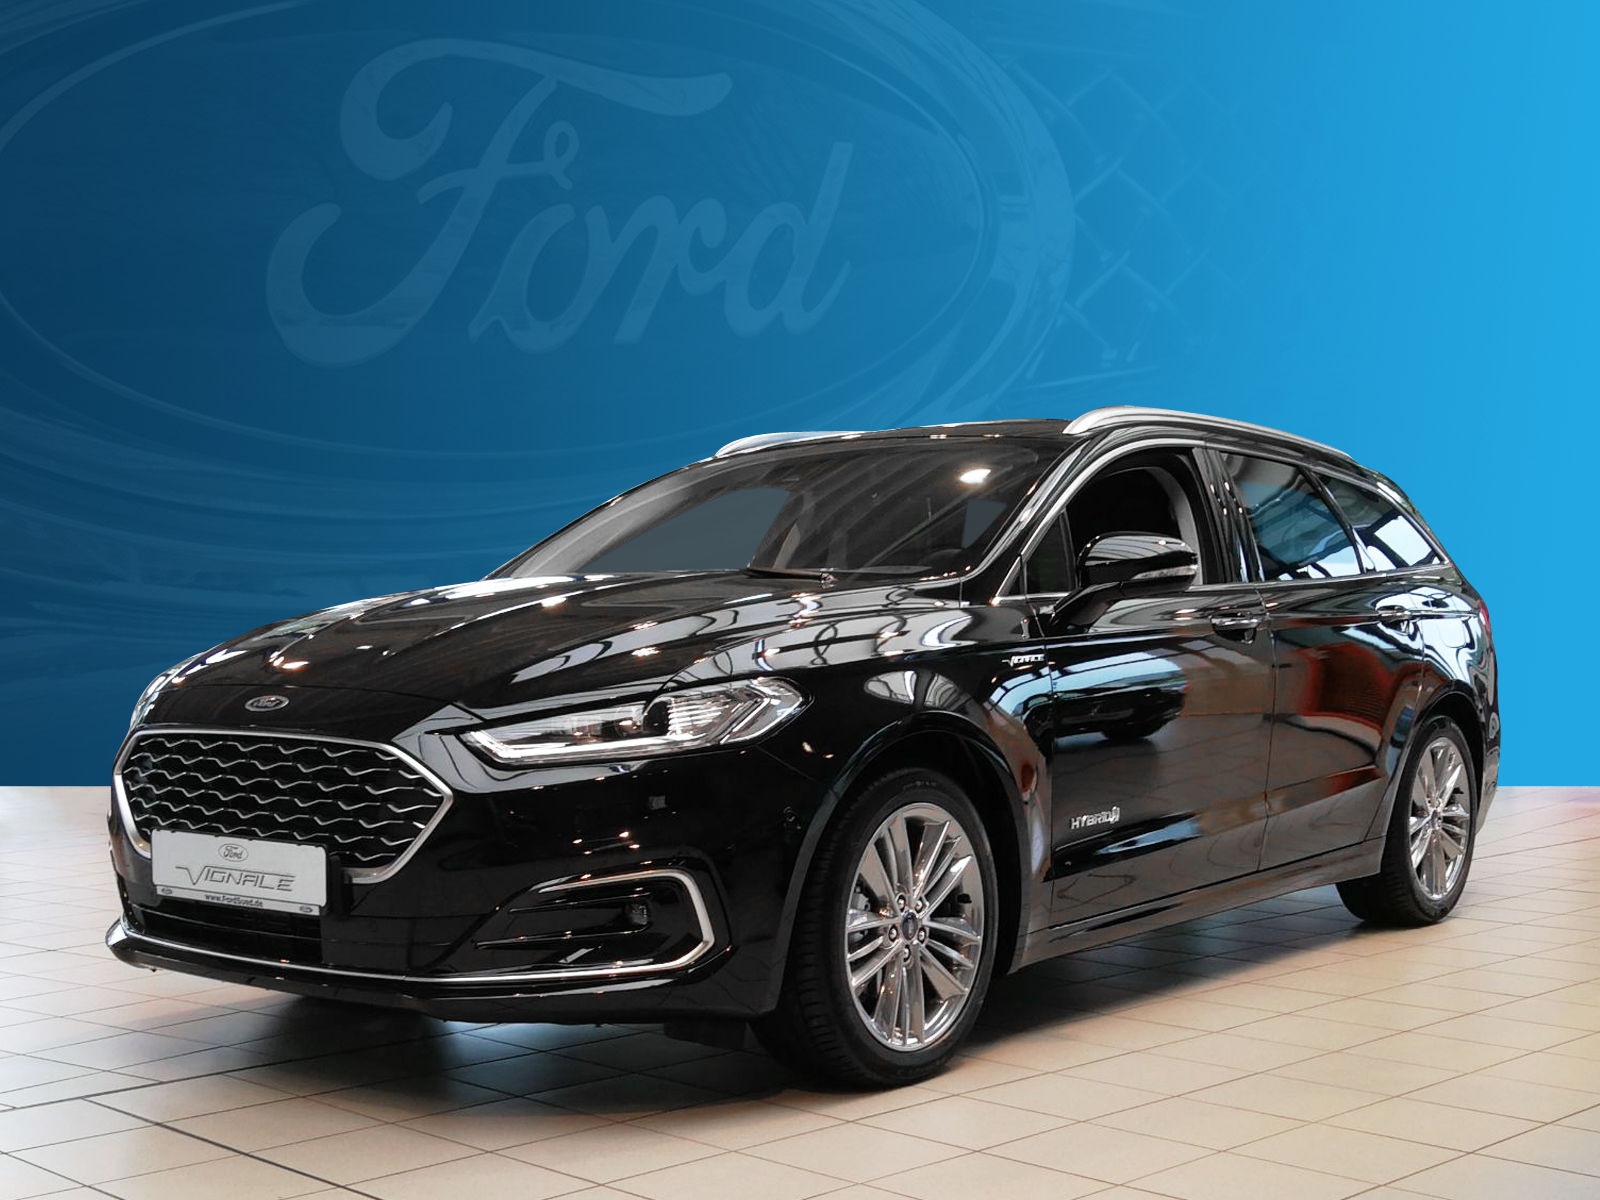 Ford Mondeo Gebrauchtwagen Autos In Magdeburg Kaufen